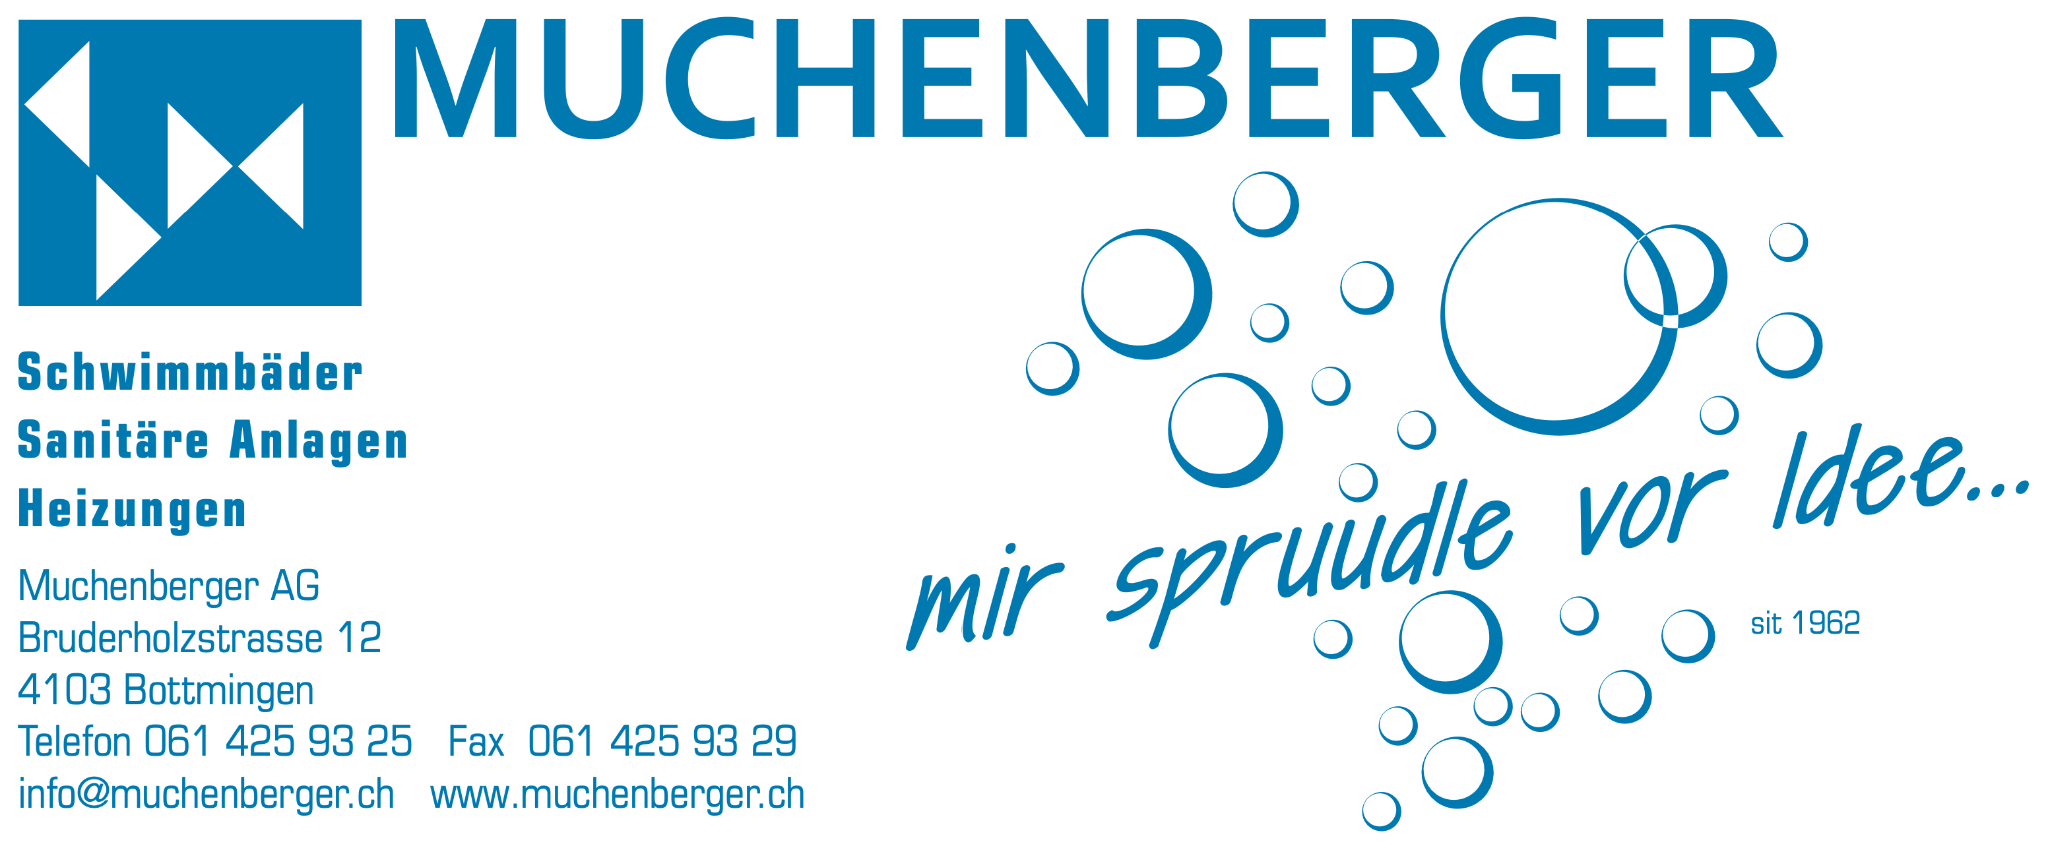 Muchenberger